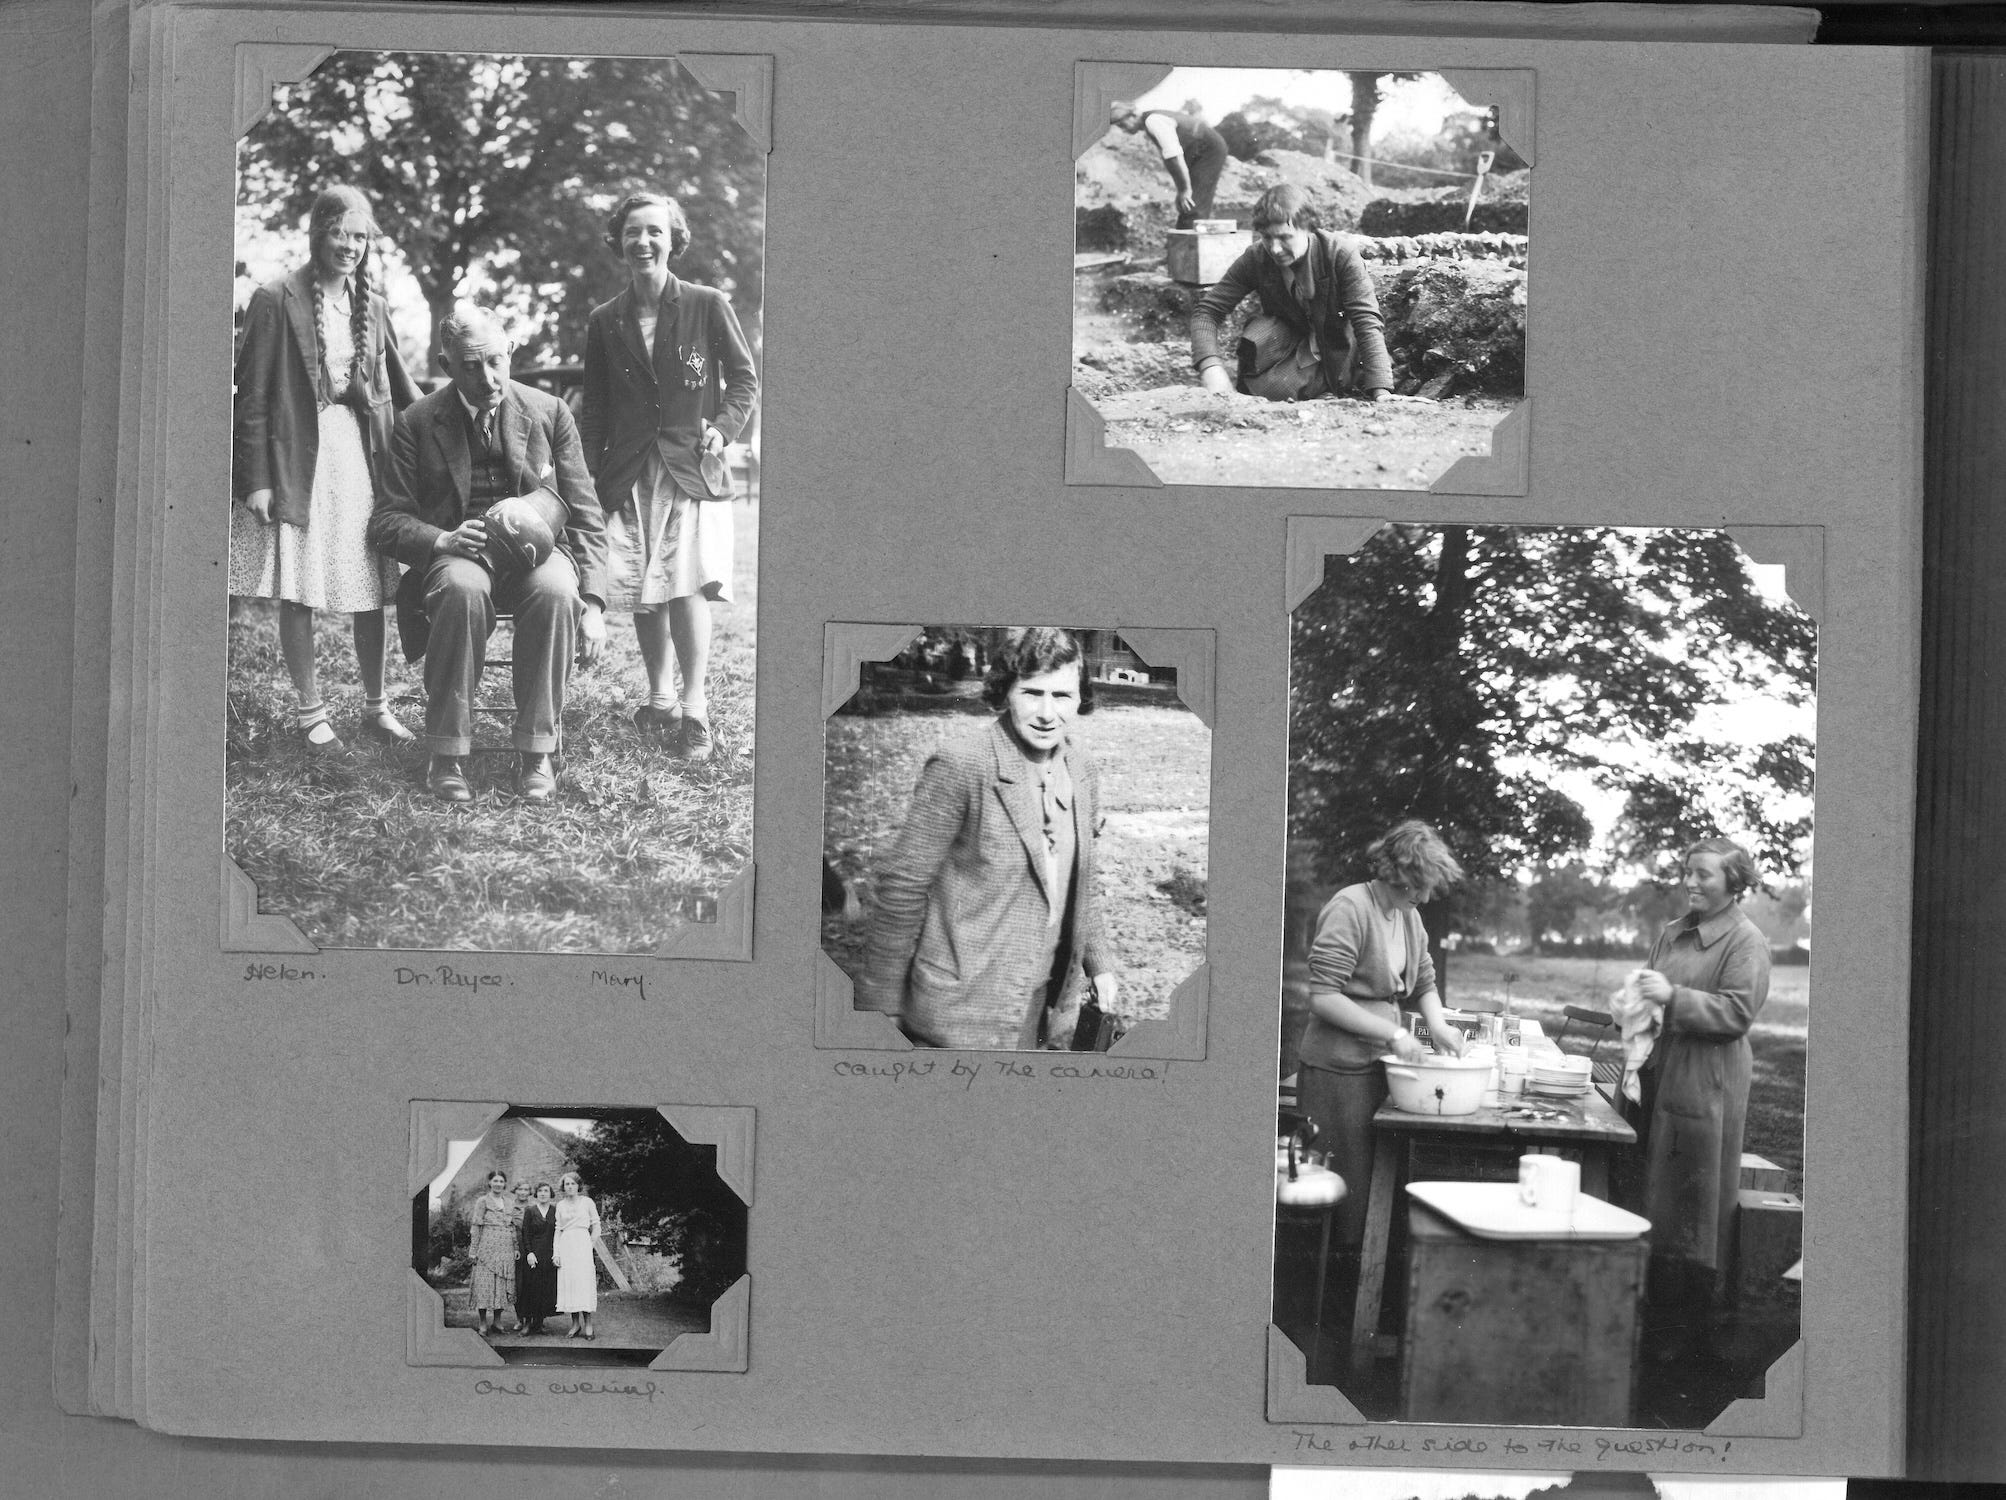 Eine Fotoalbumseite mit fünf Schwarzweißfotos von der Verulamium-Ausgrabung in Großbritannien in den 1930er Jahren